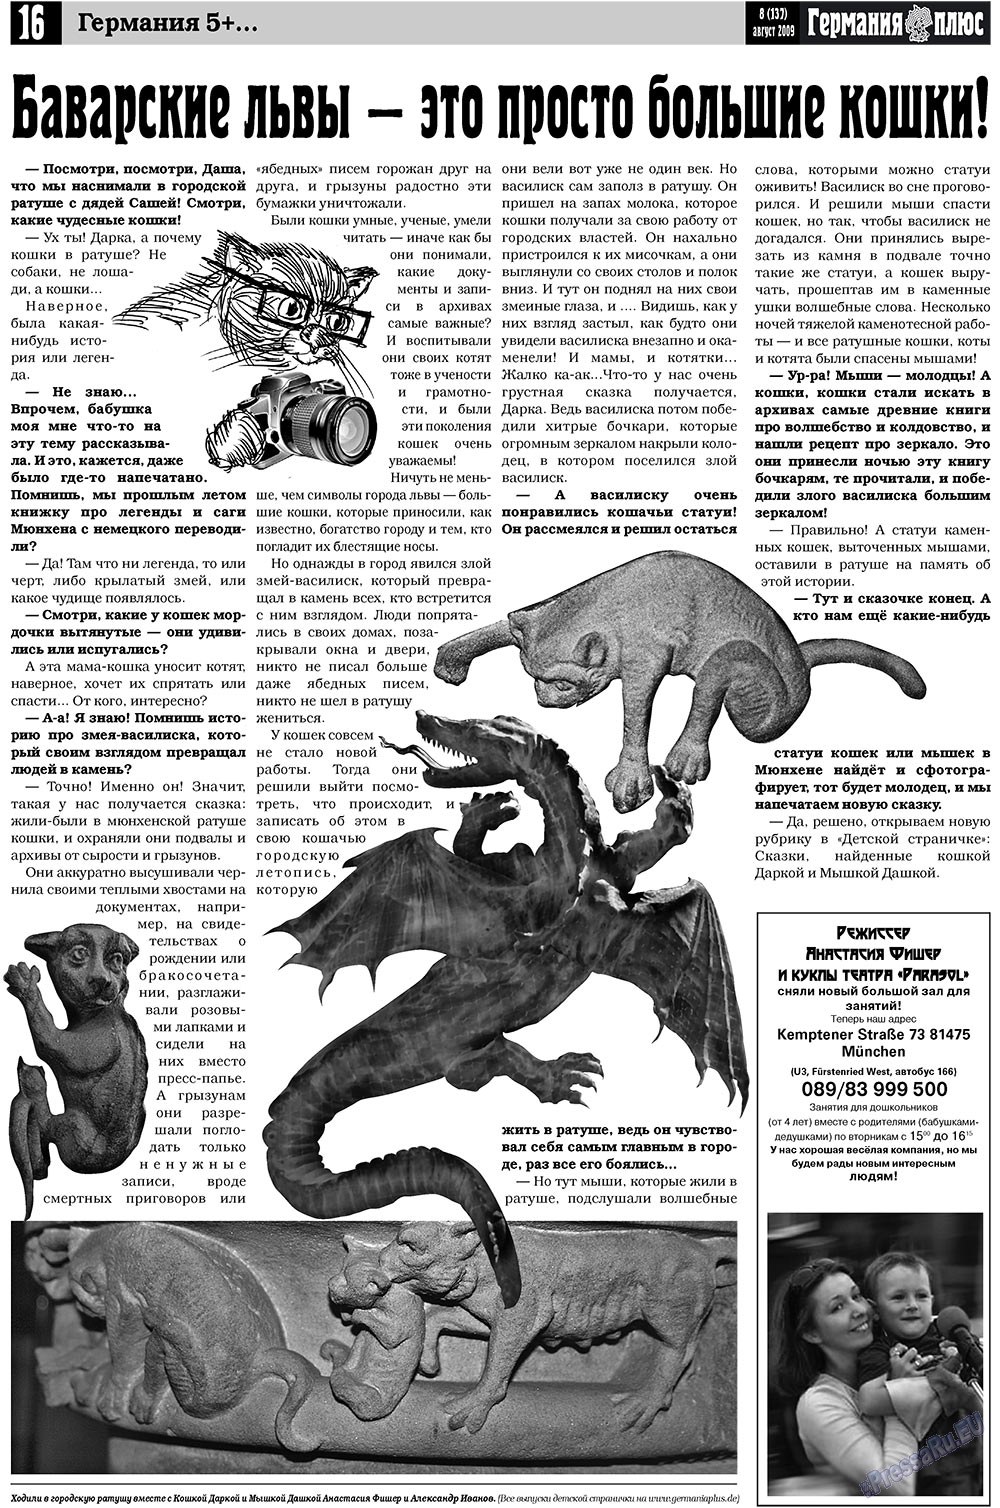 Германия плюс (газета). 2009 год, номер 8, стр. 20